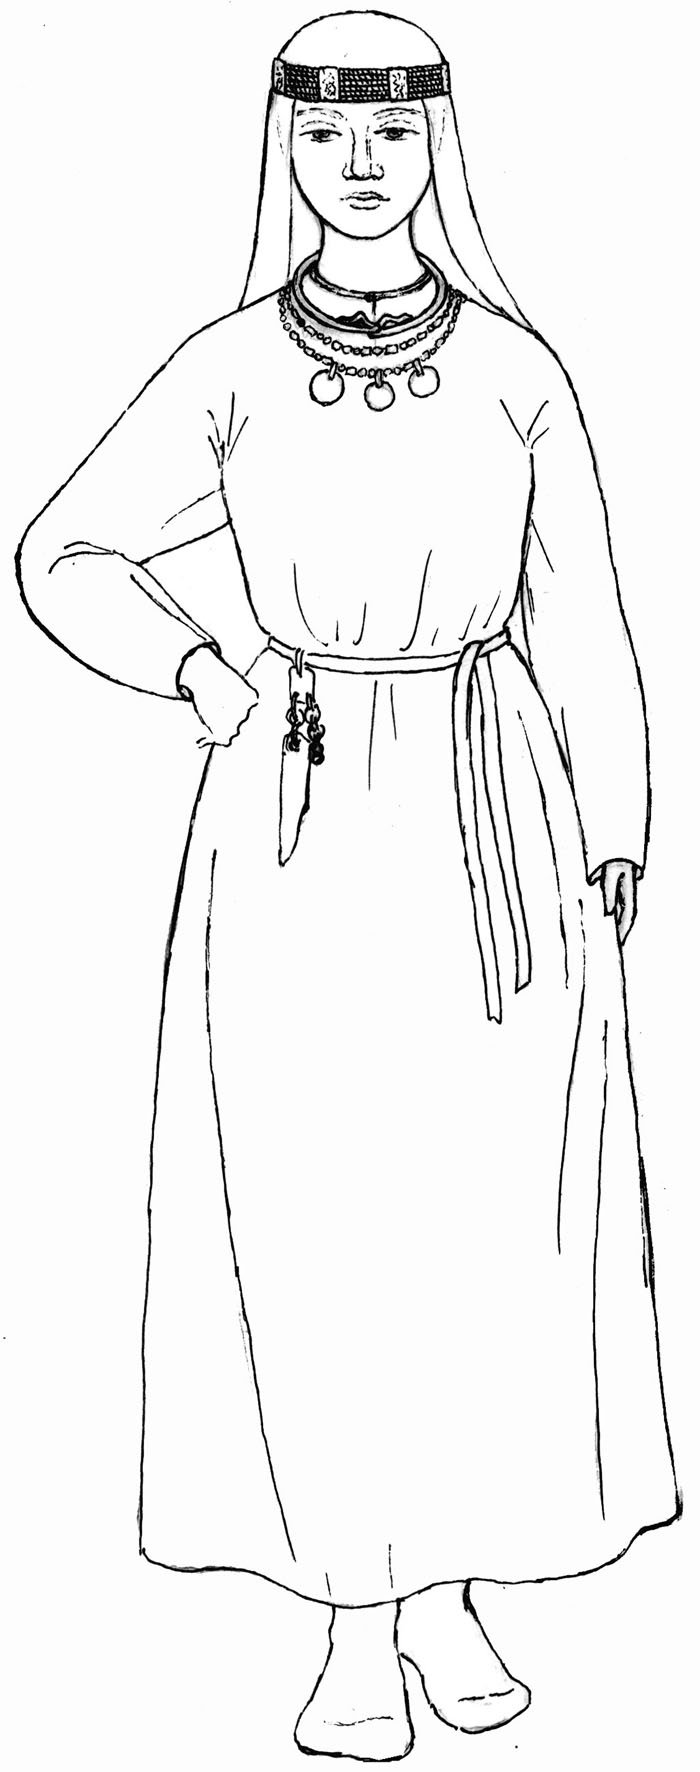 Иллюстрация женского костюма в древности